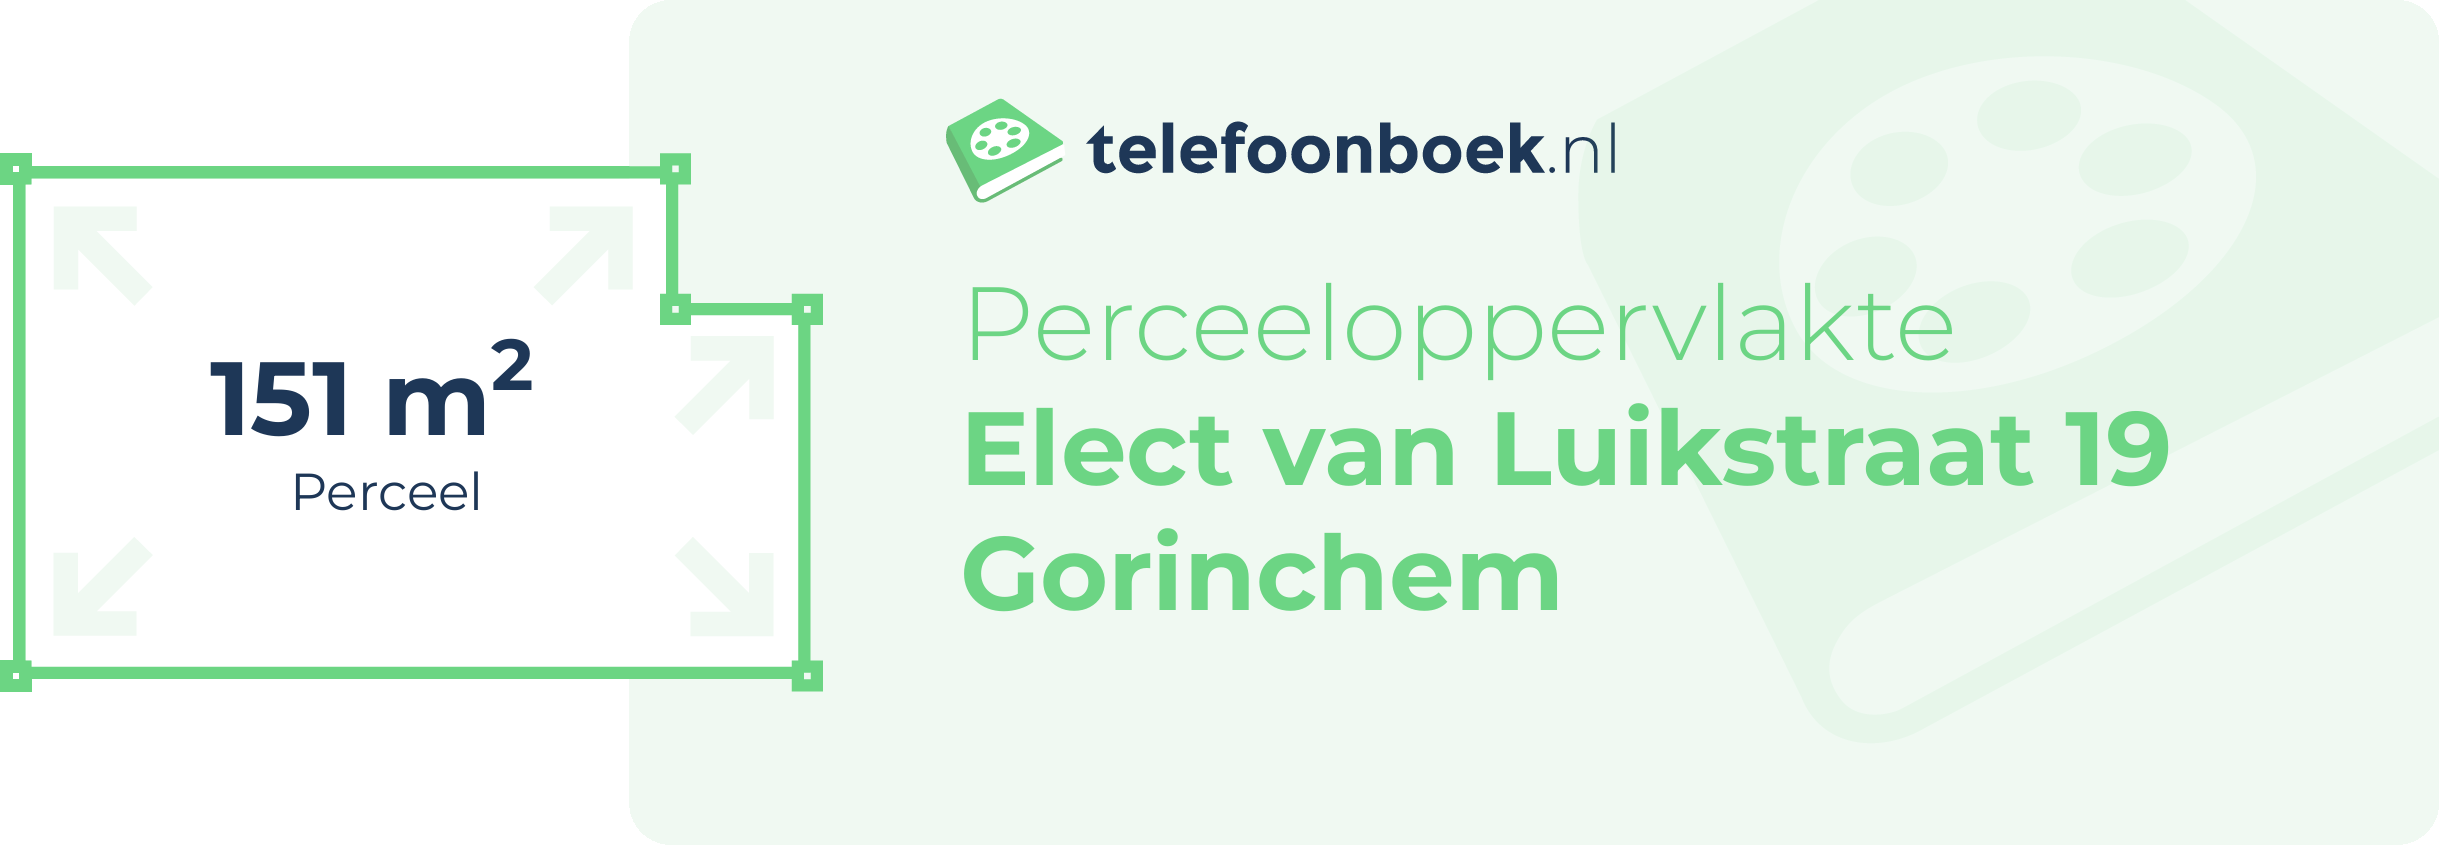 Perceeloppervlakte Elect Van Luikstraat 19 Gorinchem